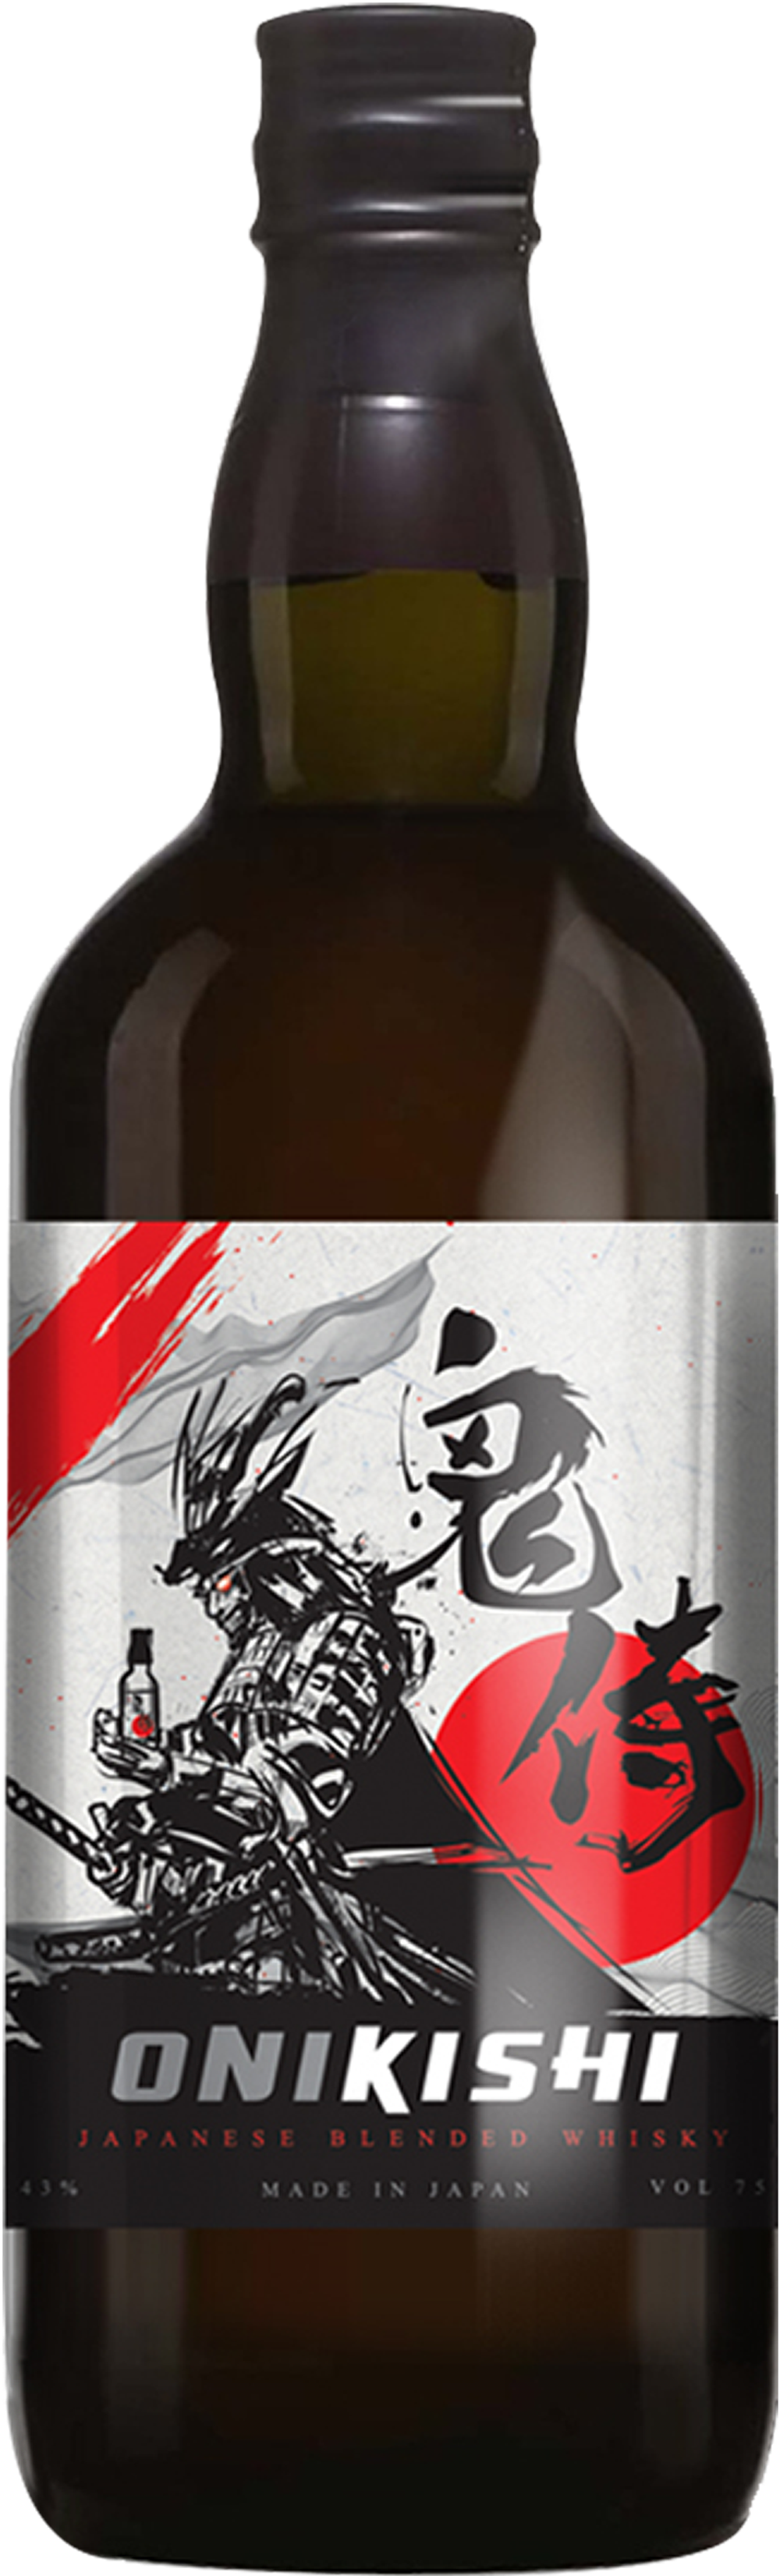 Erbjudanden på Onikishi Japanese Blended Whisky Demon Knight från Calle för 24,99 €